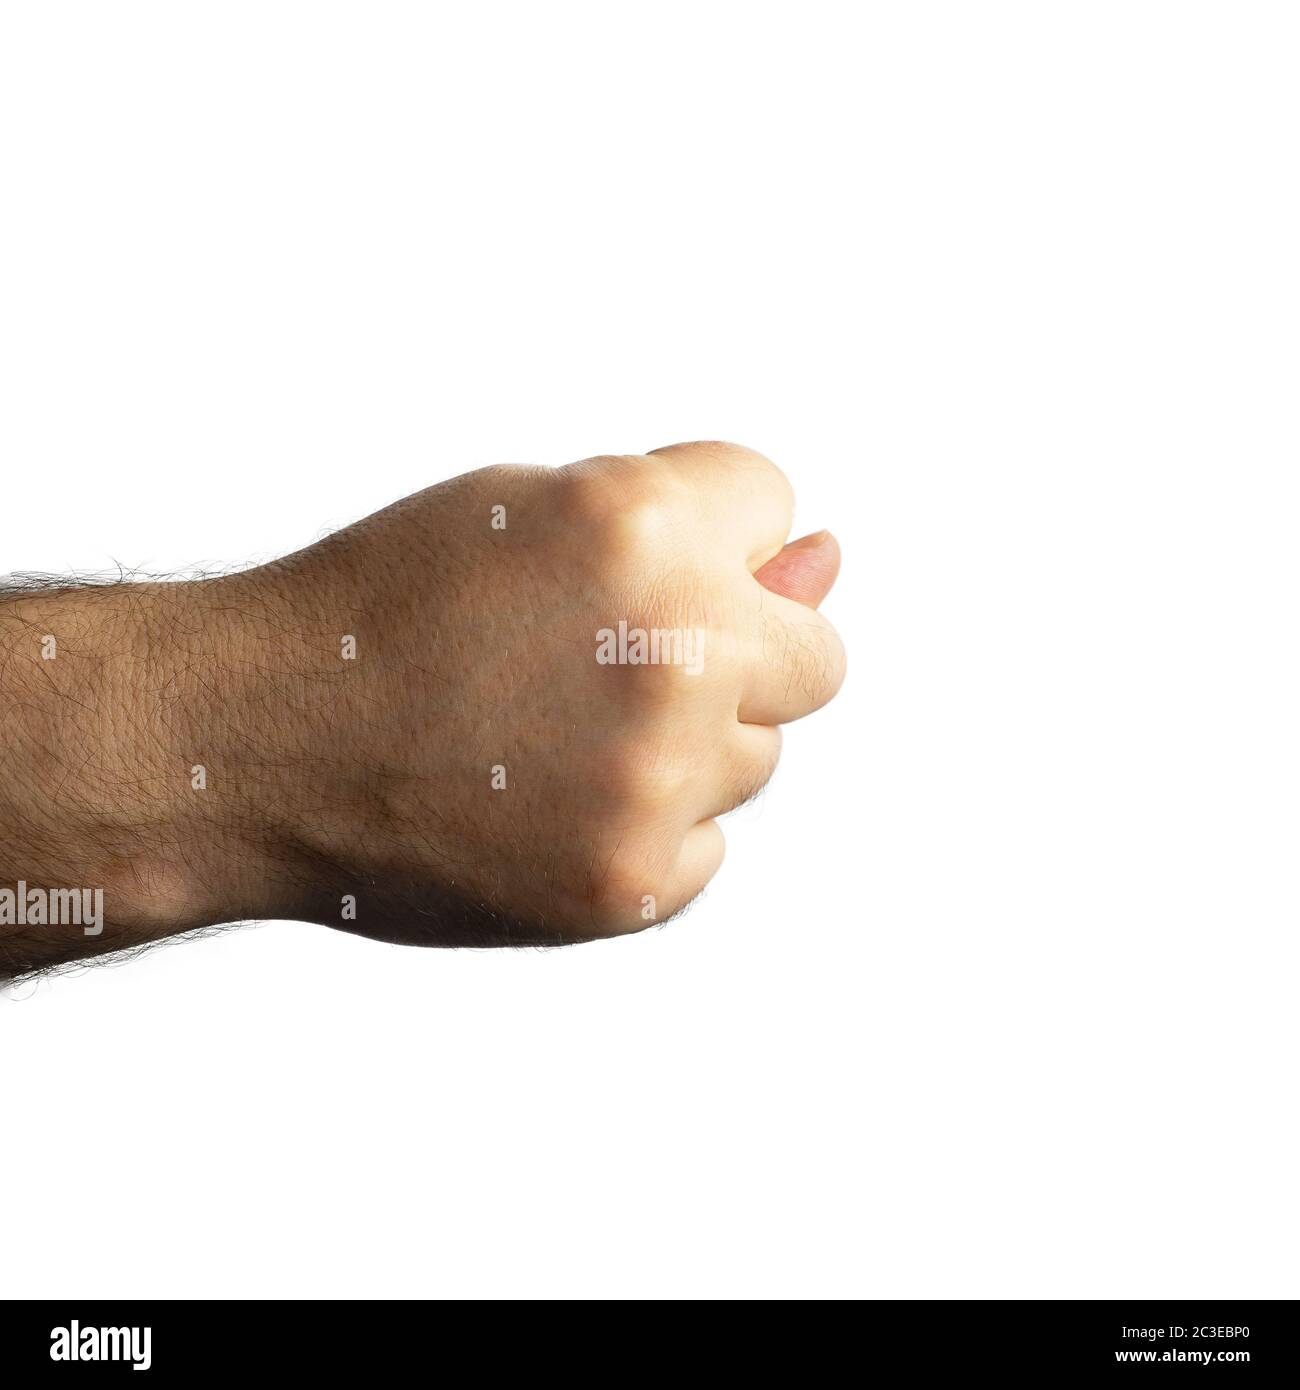 La brutale mano pelosa maschile è aggraffata in un pugno e il pollice si stende tra le dita medie e indicizzate Foto Stock